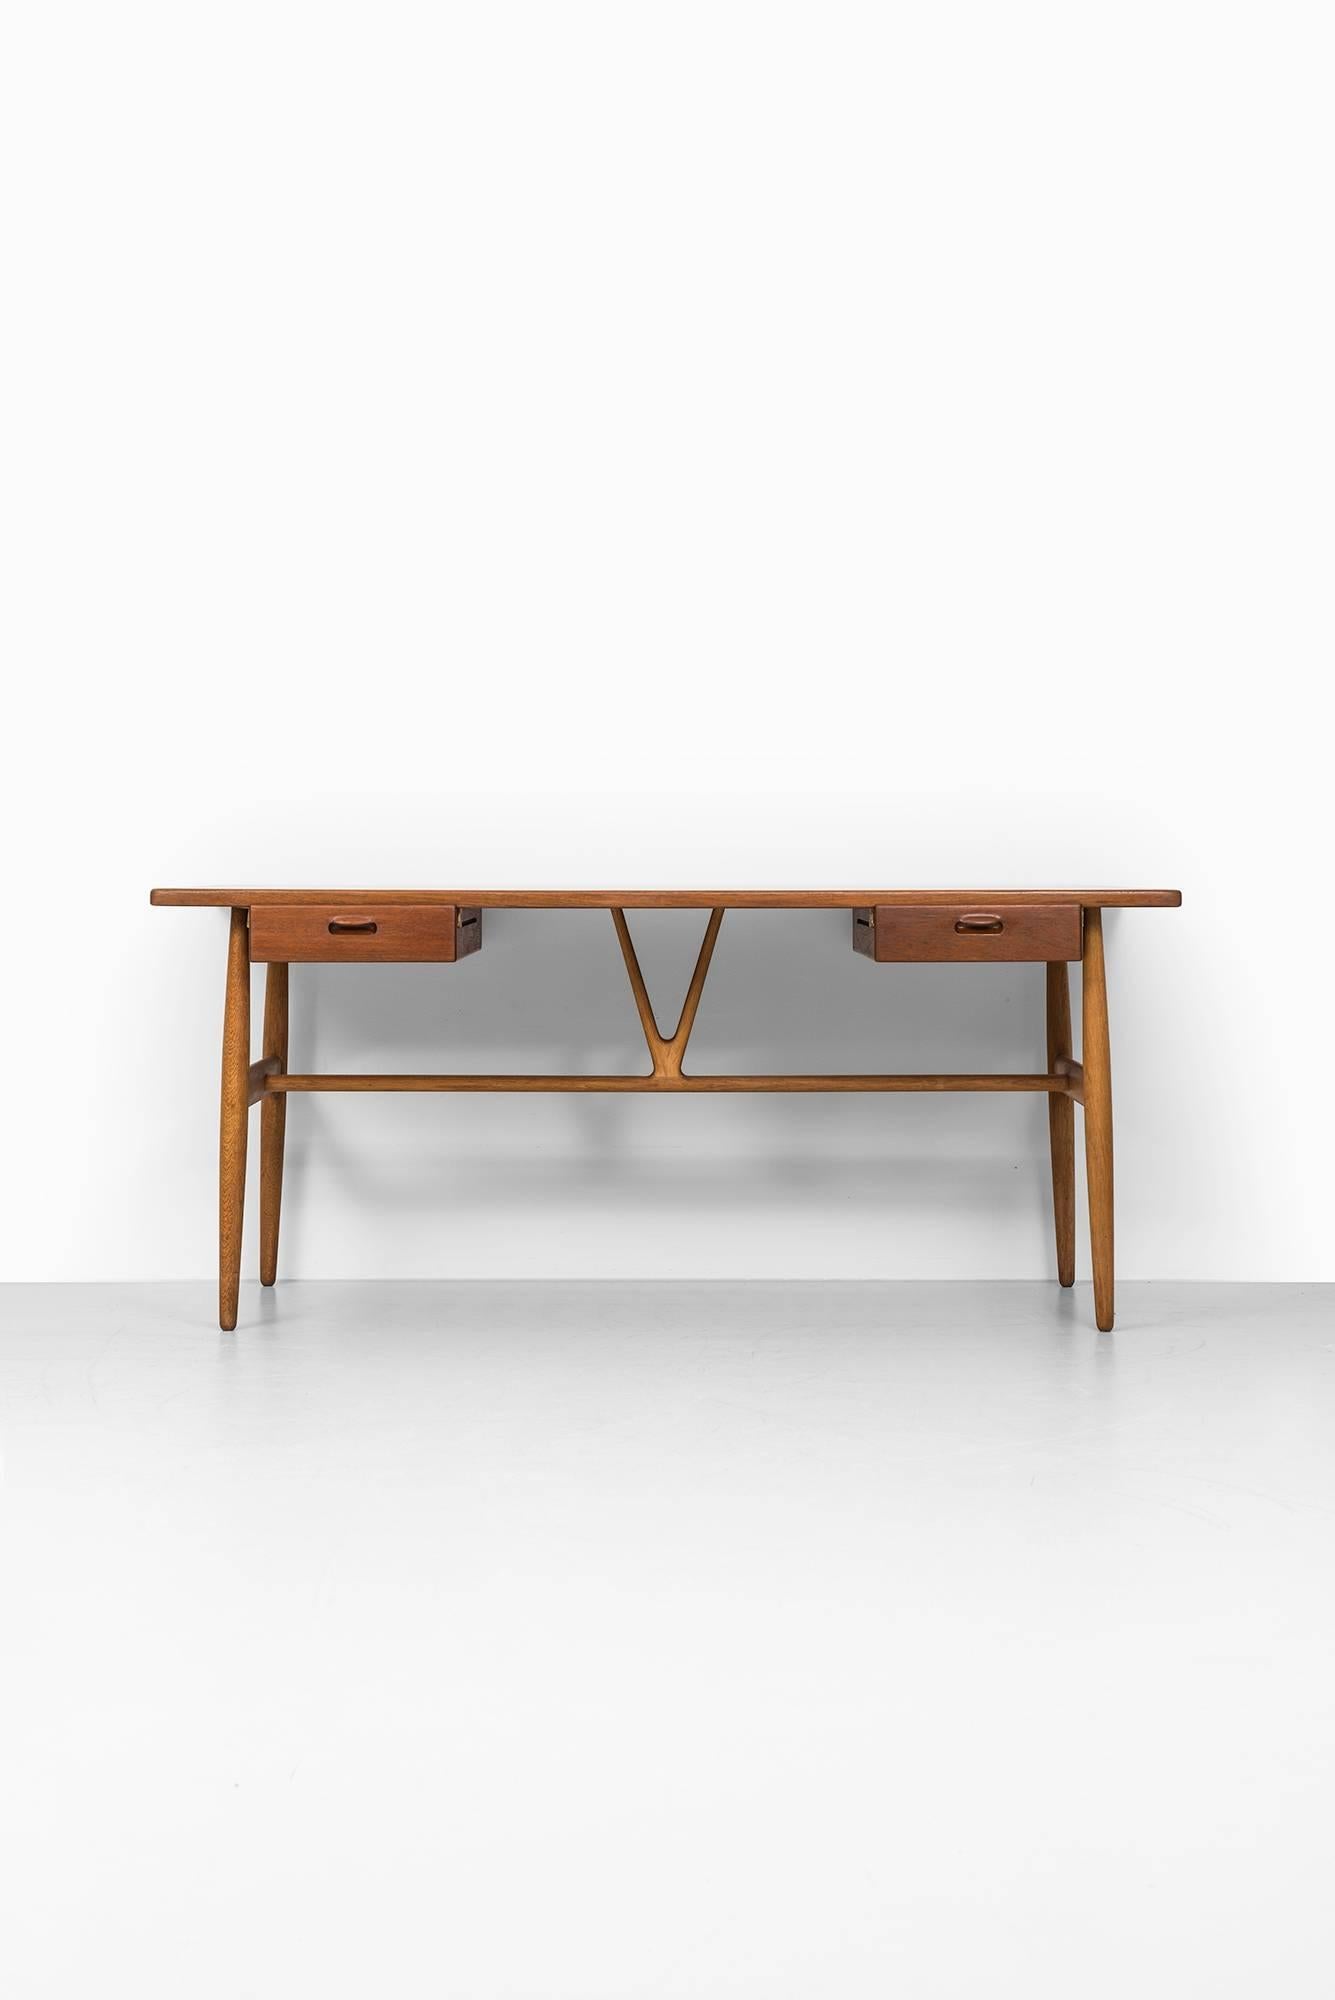 Scandinavian Modern Hans Wegner Wishbone / Model JH 563 Desk by Johannes Hansen in Denmark